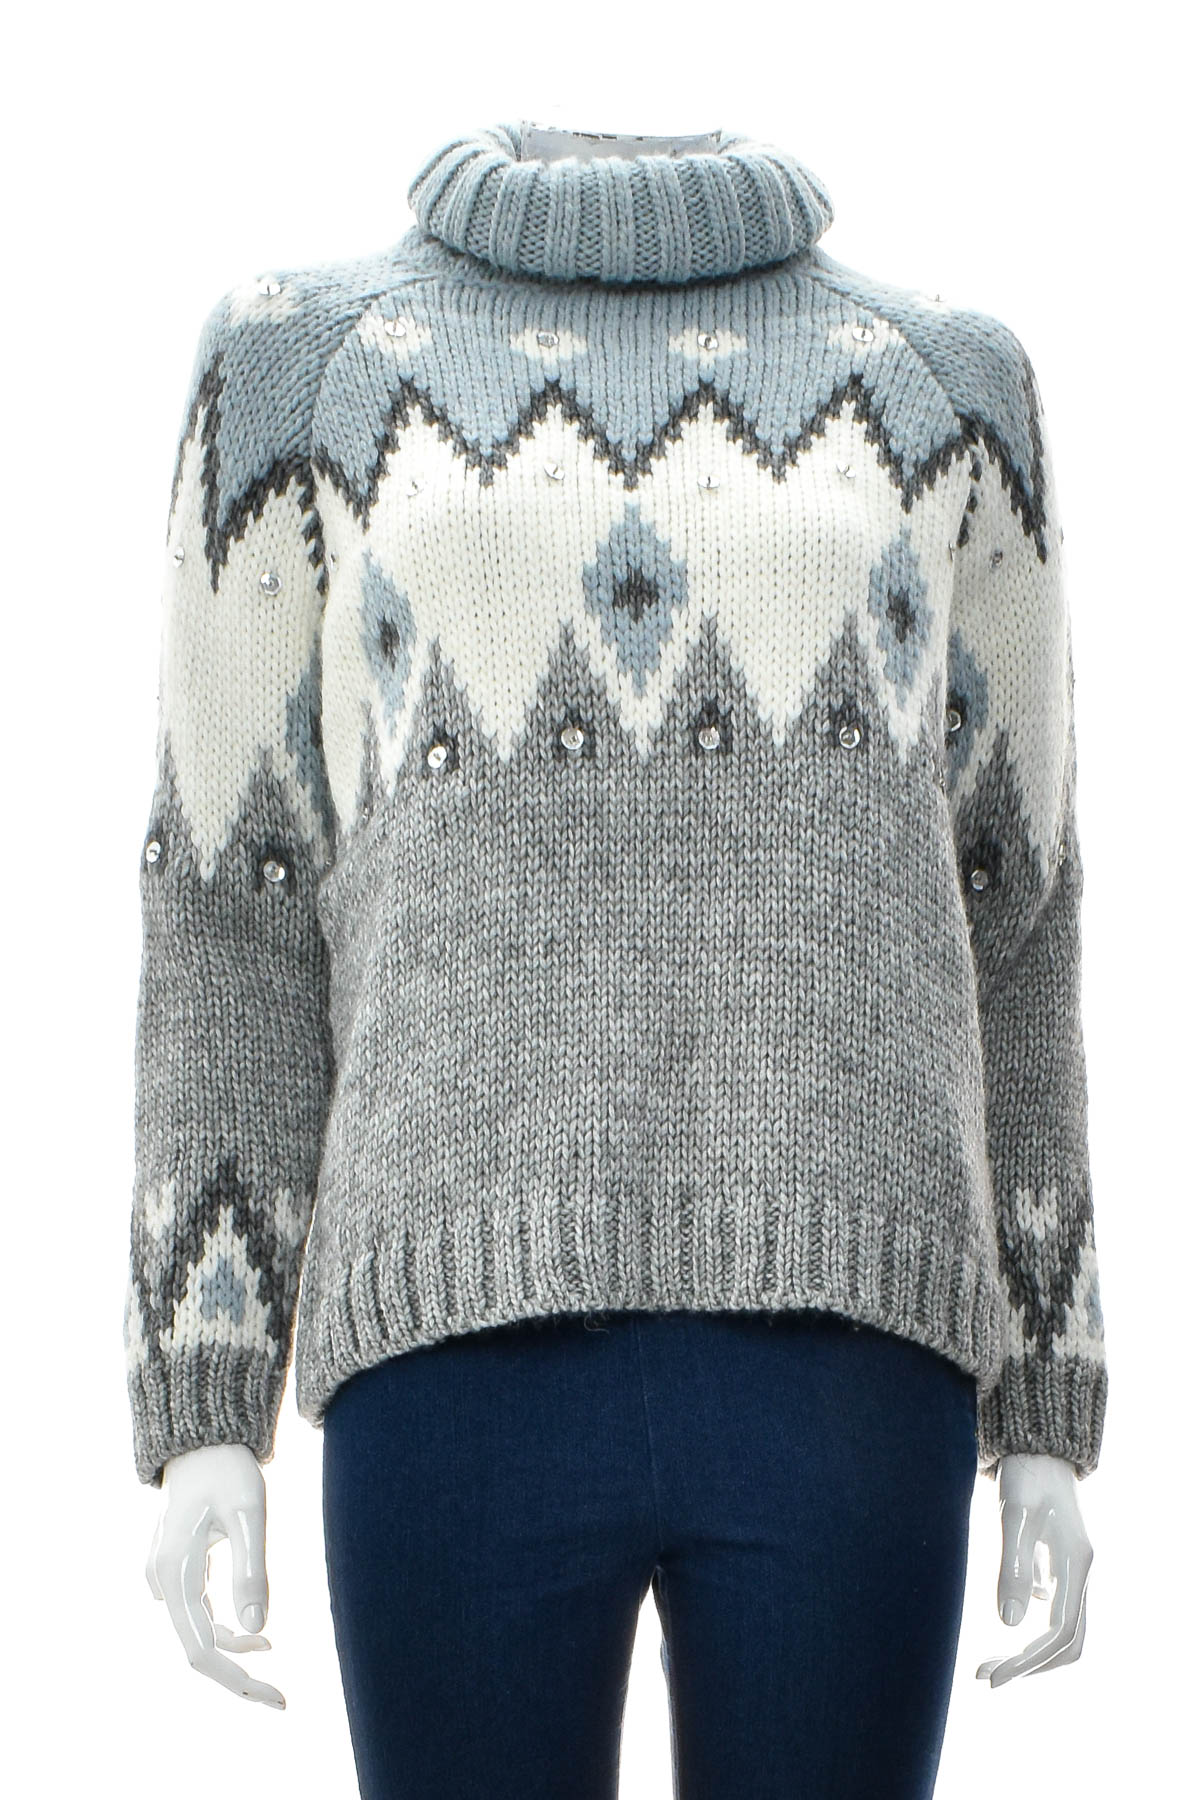 Women's sweater - Reken Maar - 0